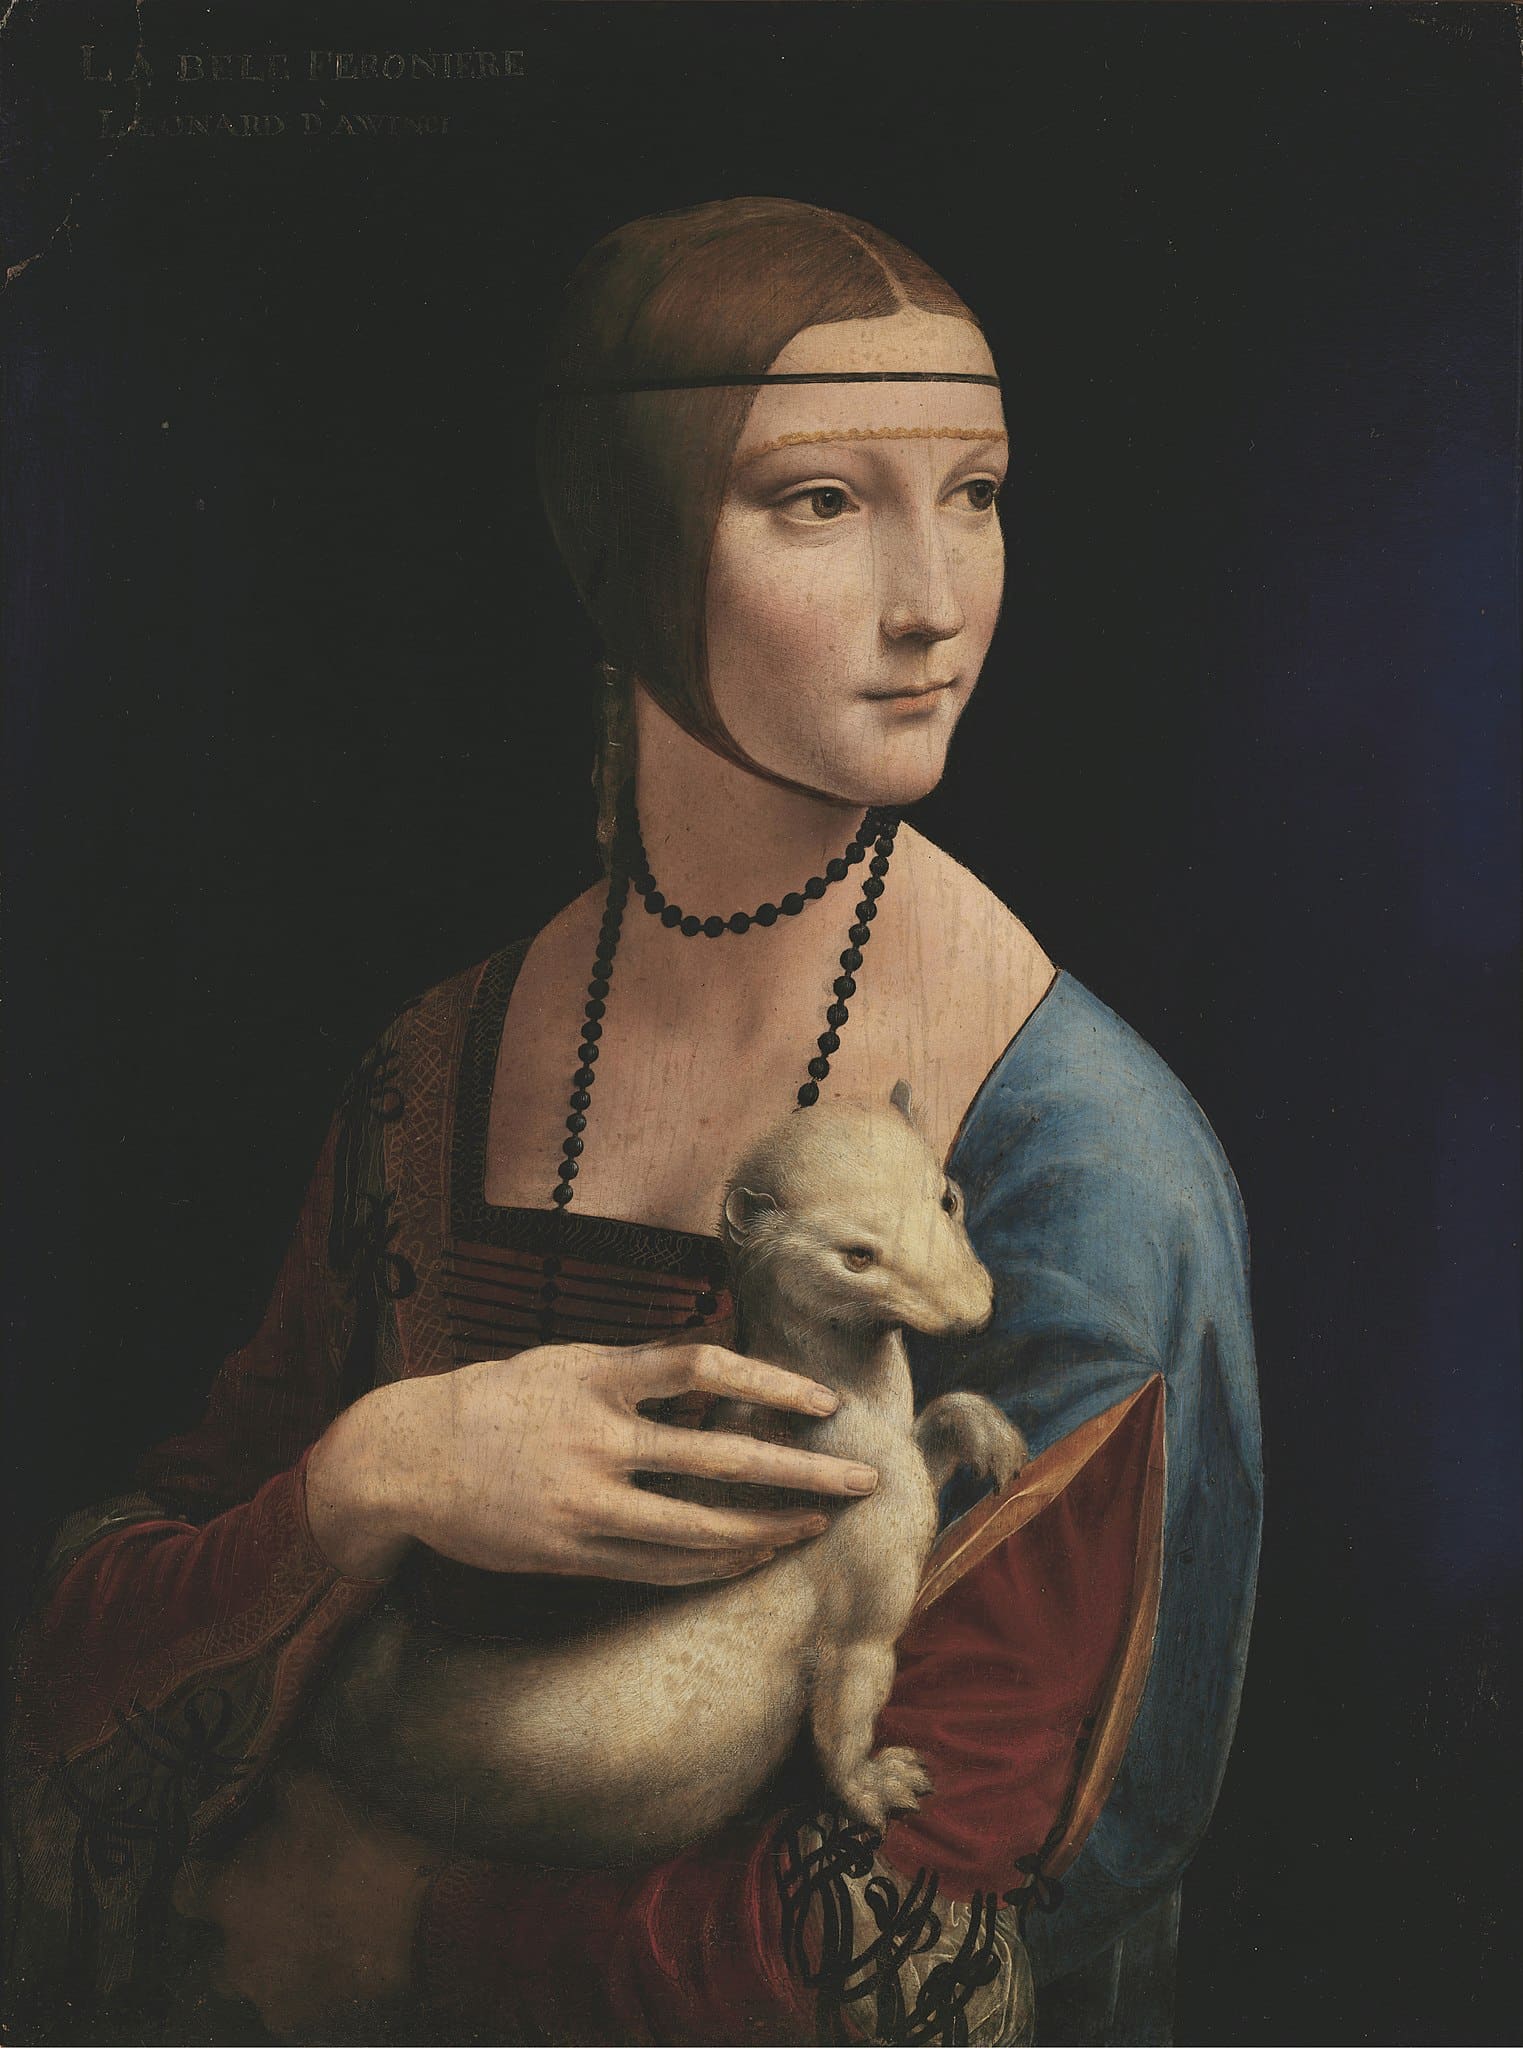 The Lady with an Ermine (Portrait of Cecilia Gallerani) by Leonardo Da Vinci